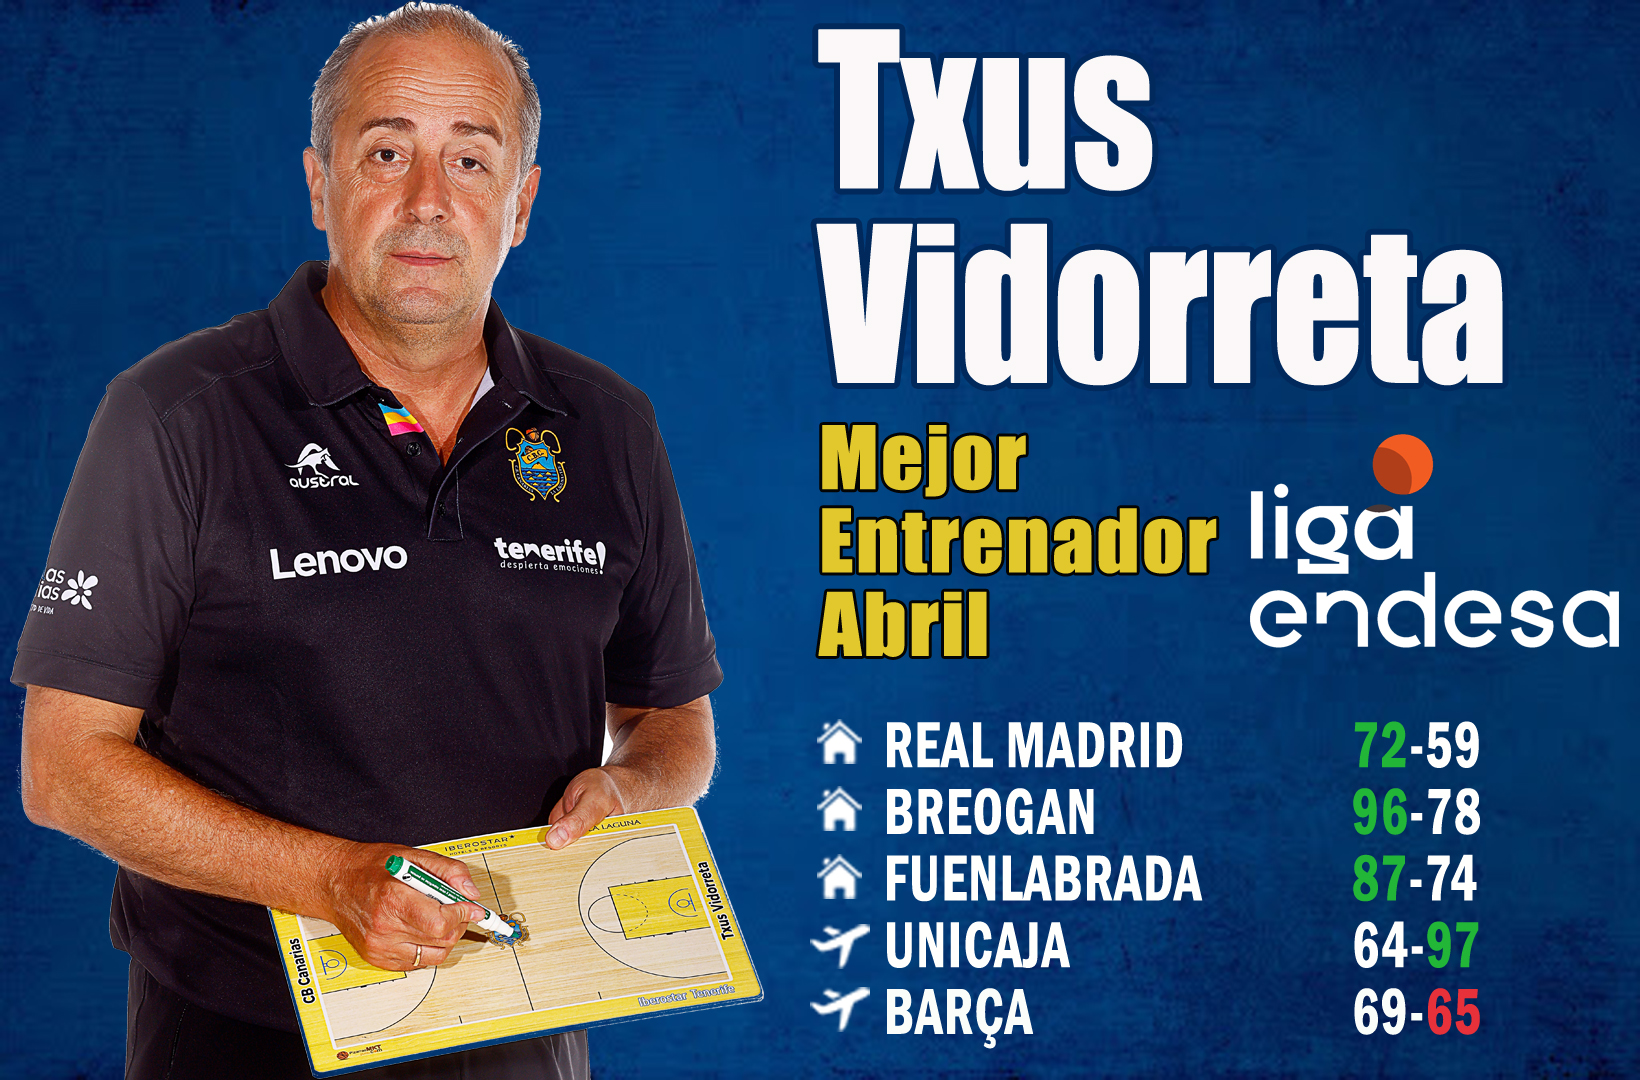 Txus Vidorreta Mejor Entrenador de Abril-Trofeo AEEB Liga Endesa. Temporada 2021-22